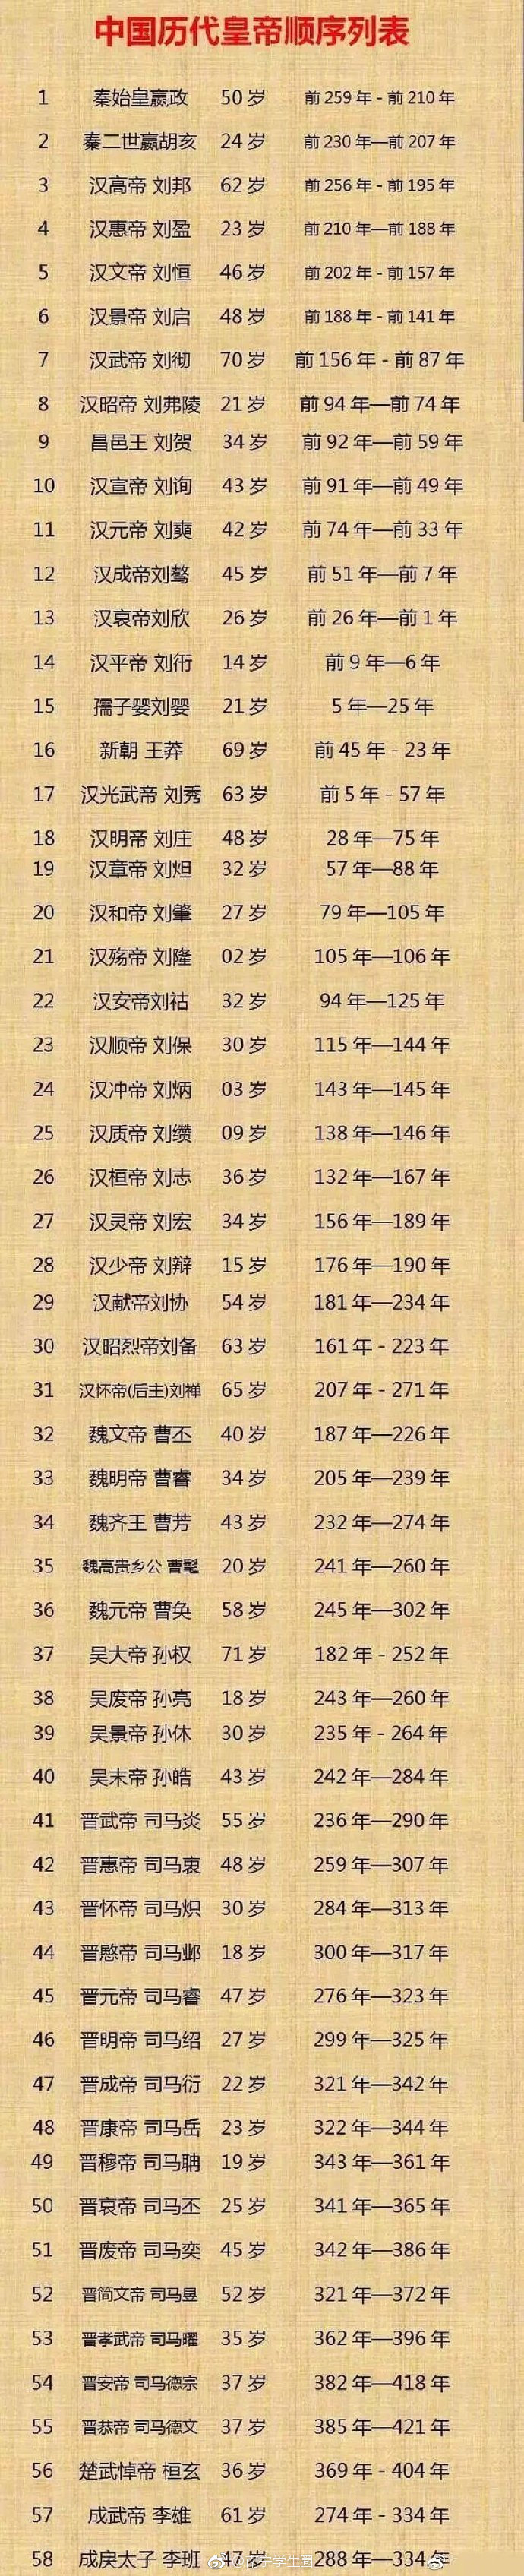 中国历代皇帝名字图片